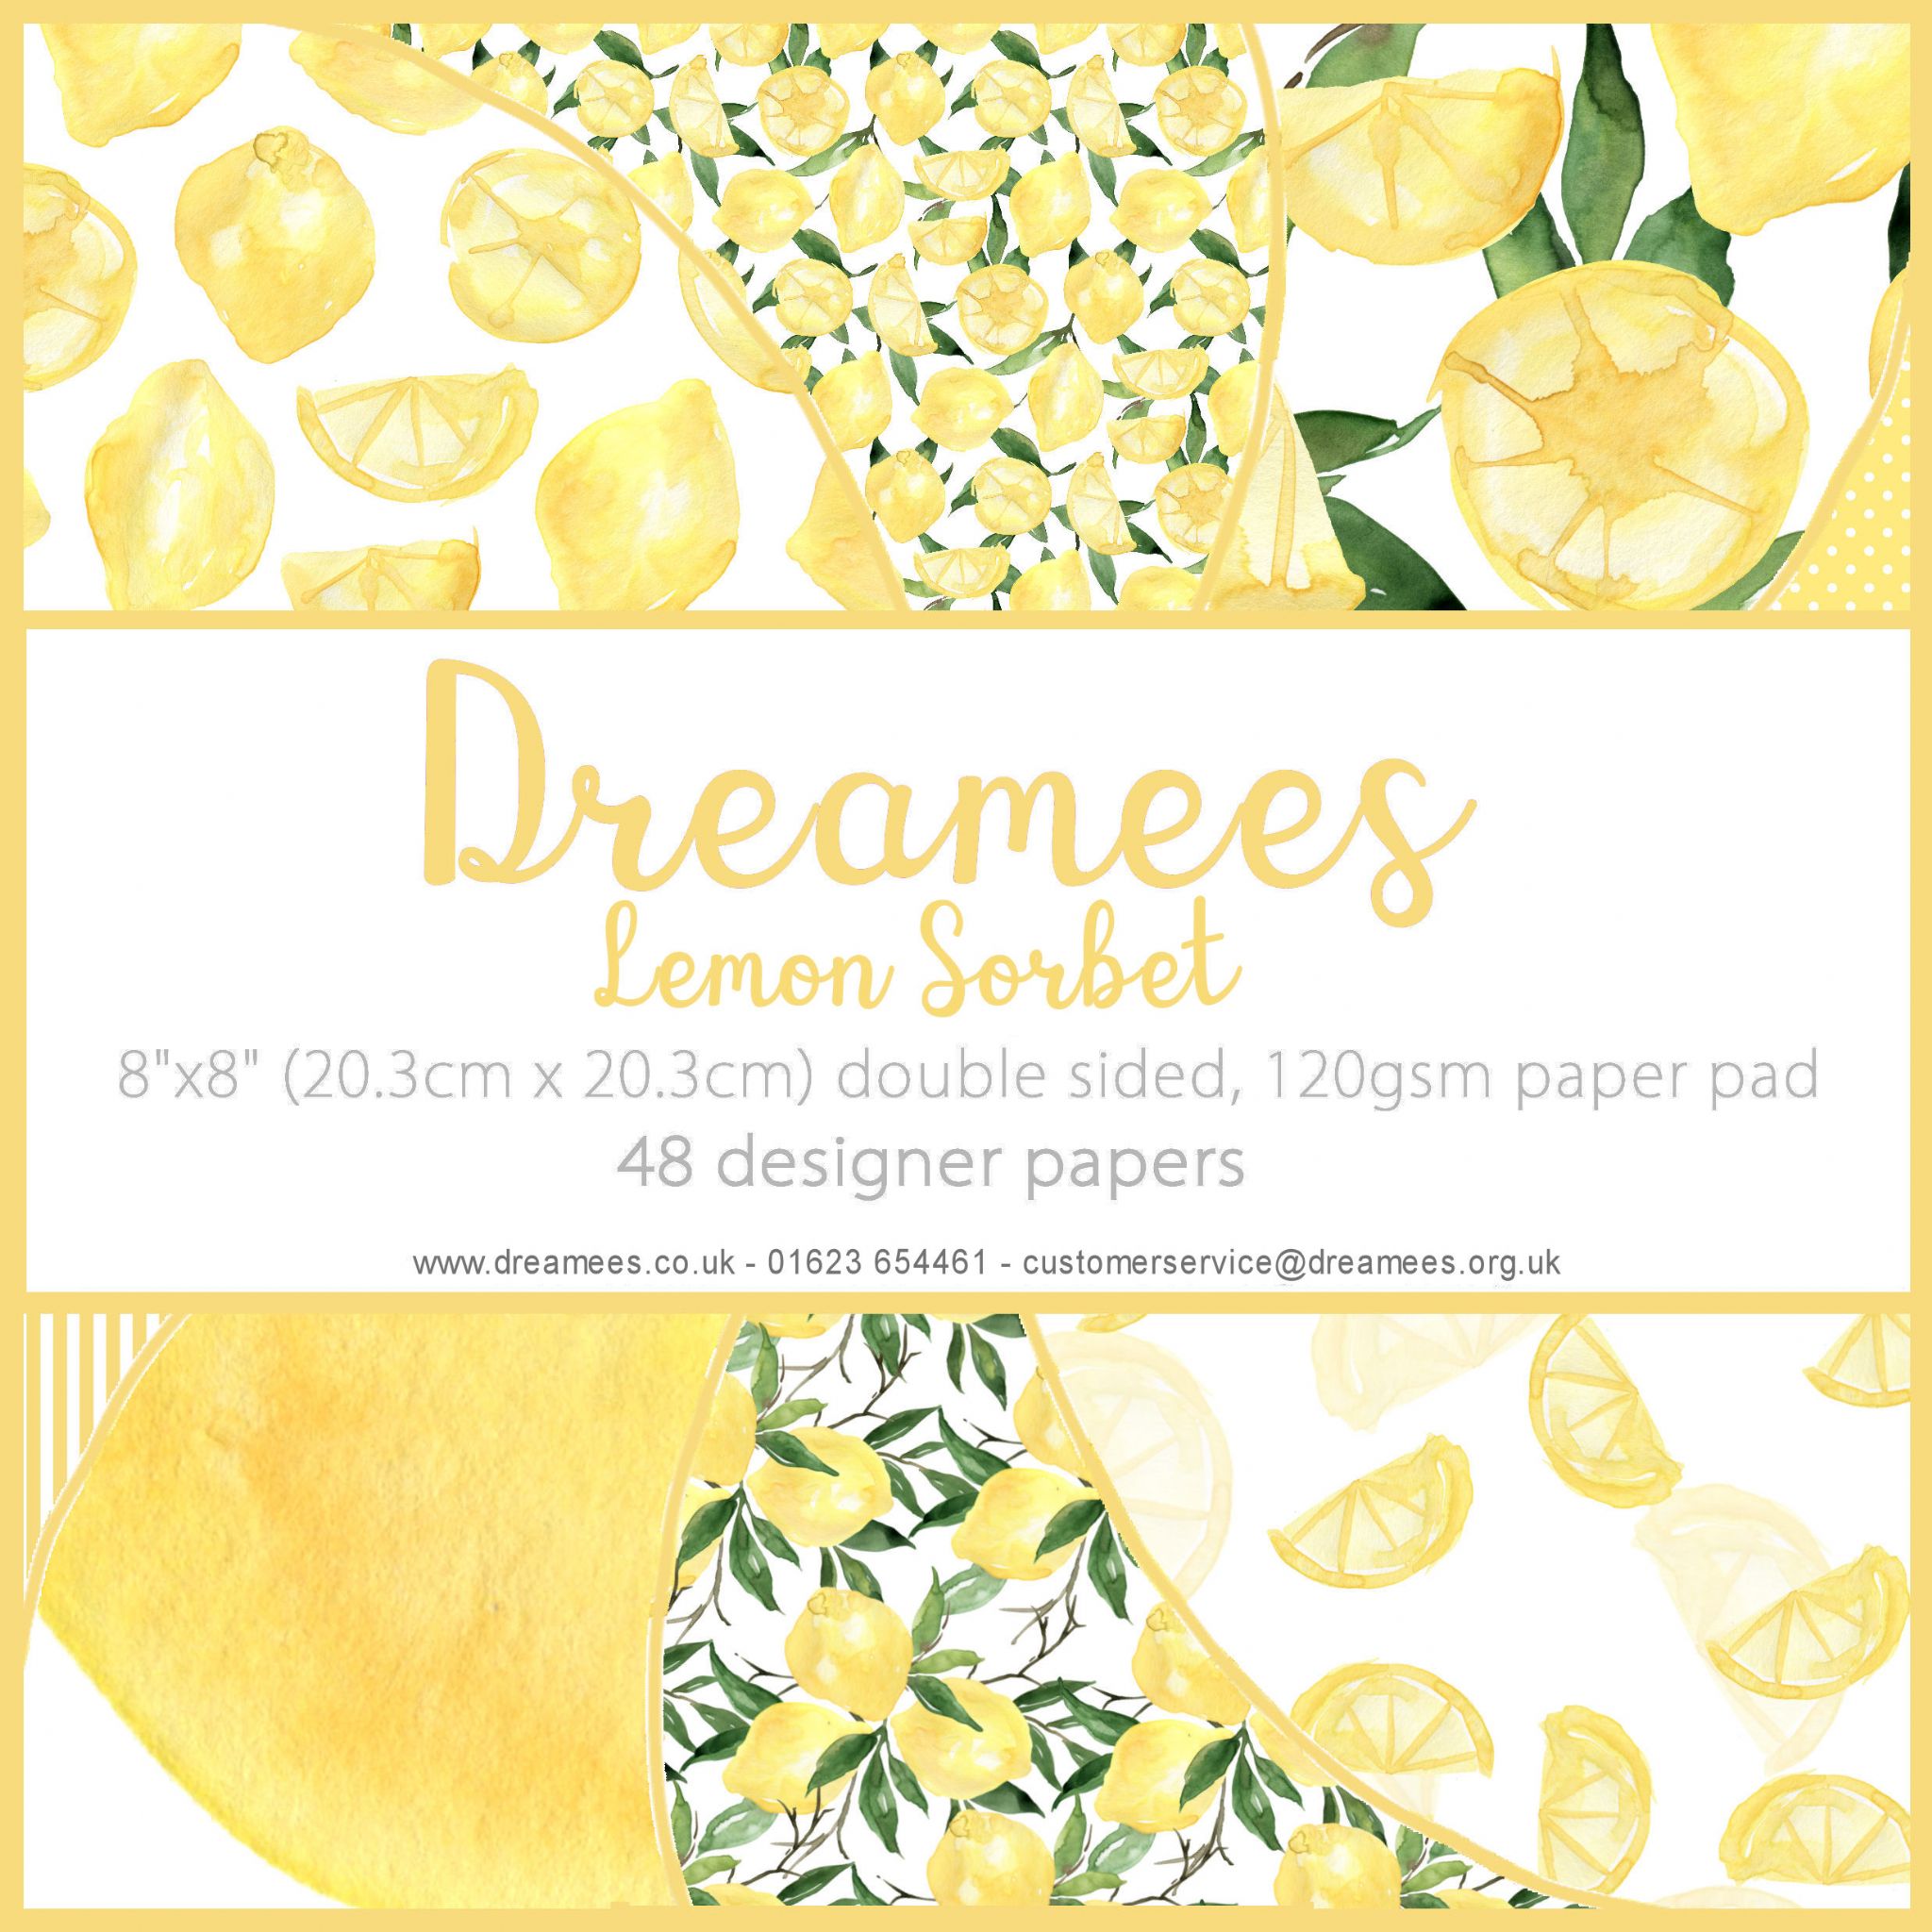 Dreamees Lemon Sorbet 8x8 Paper Pad